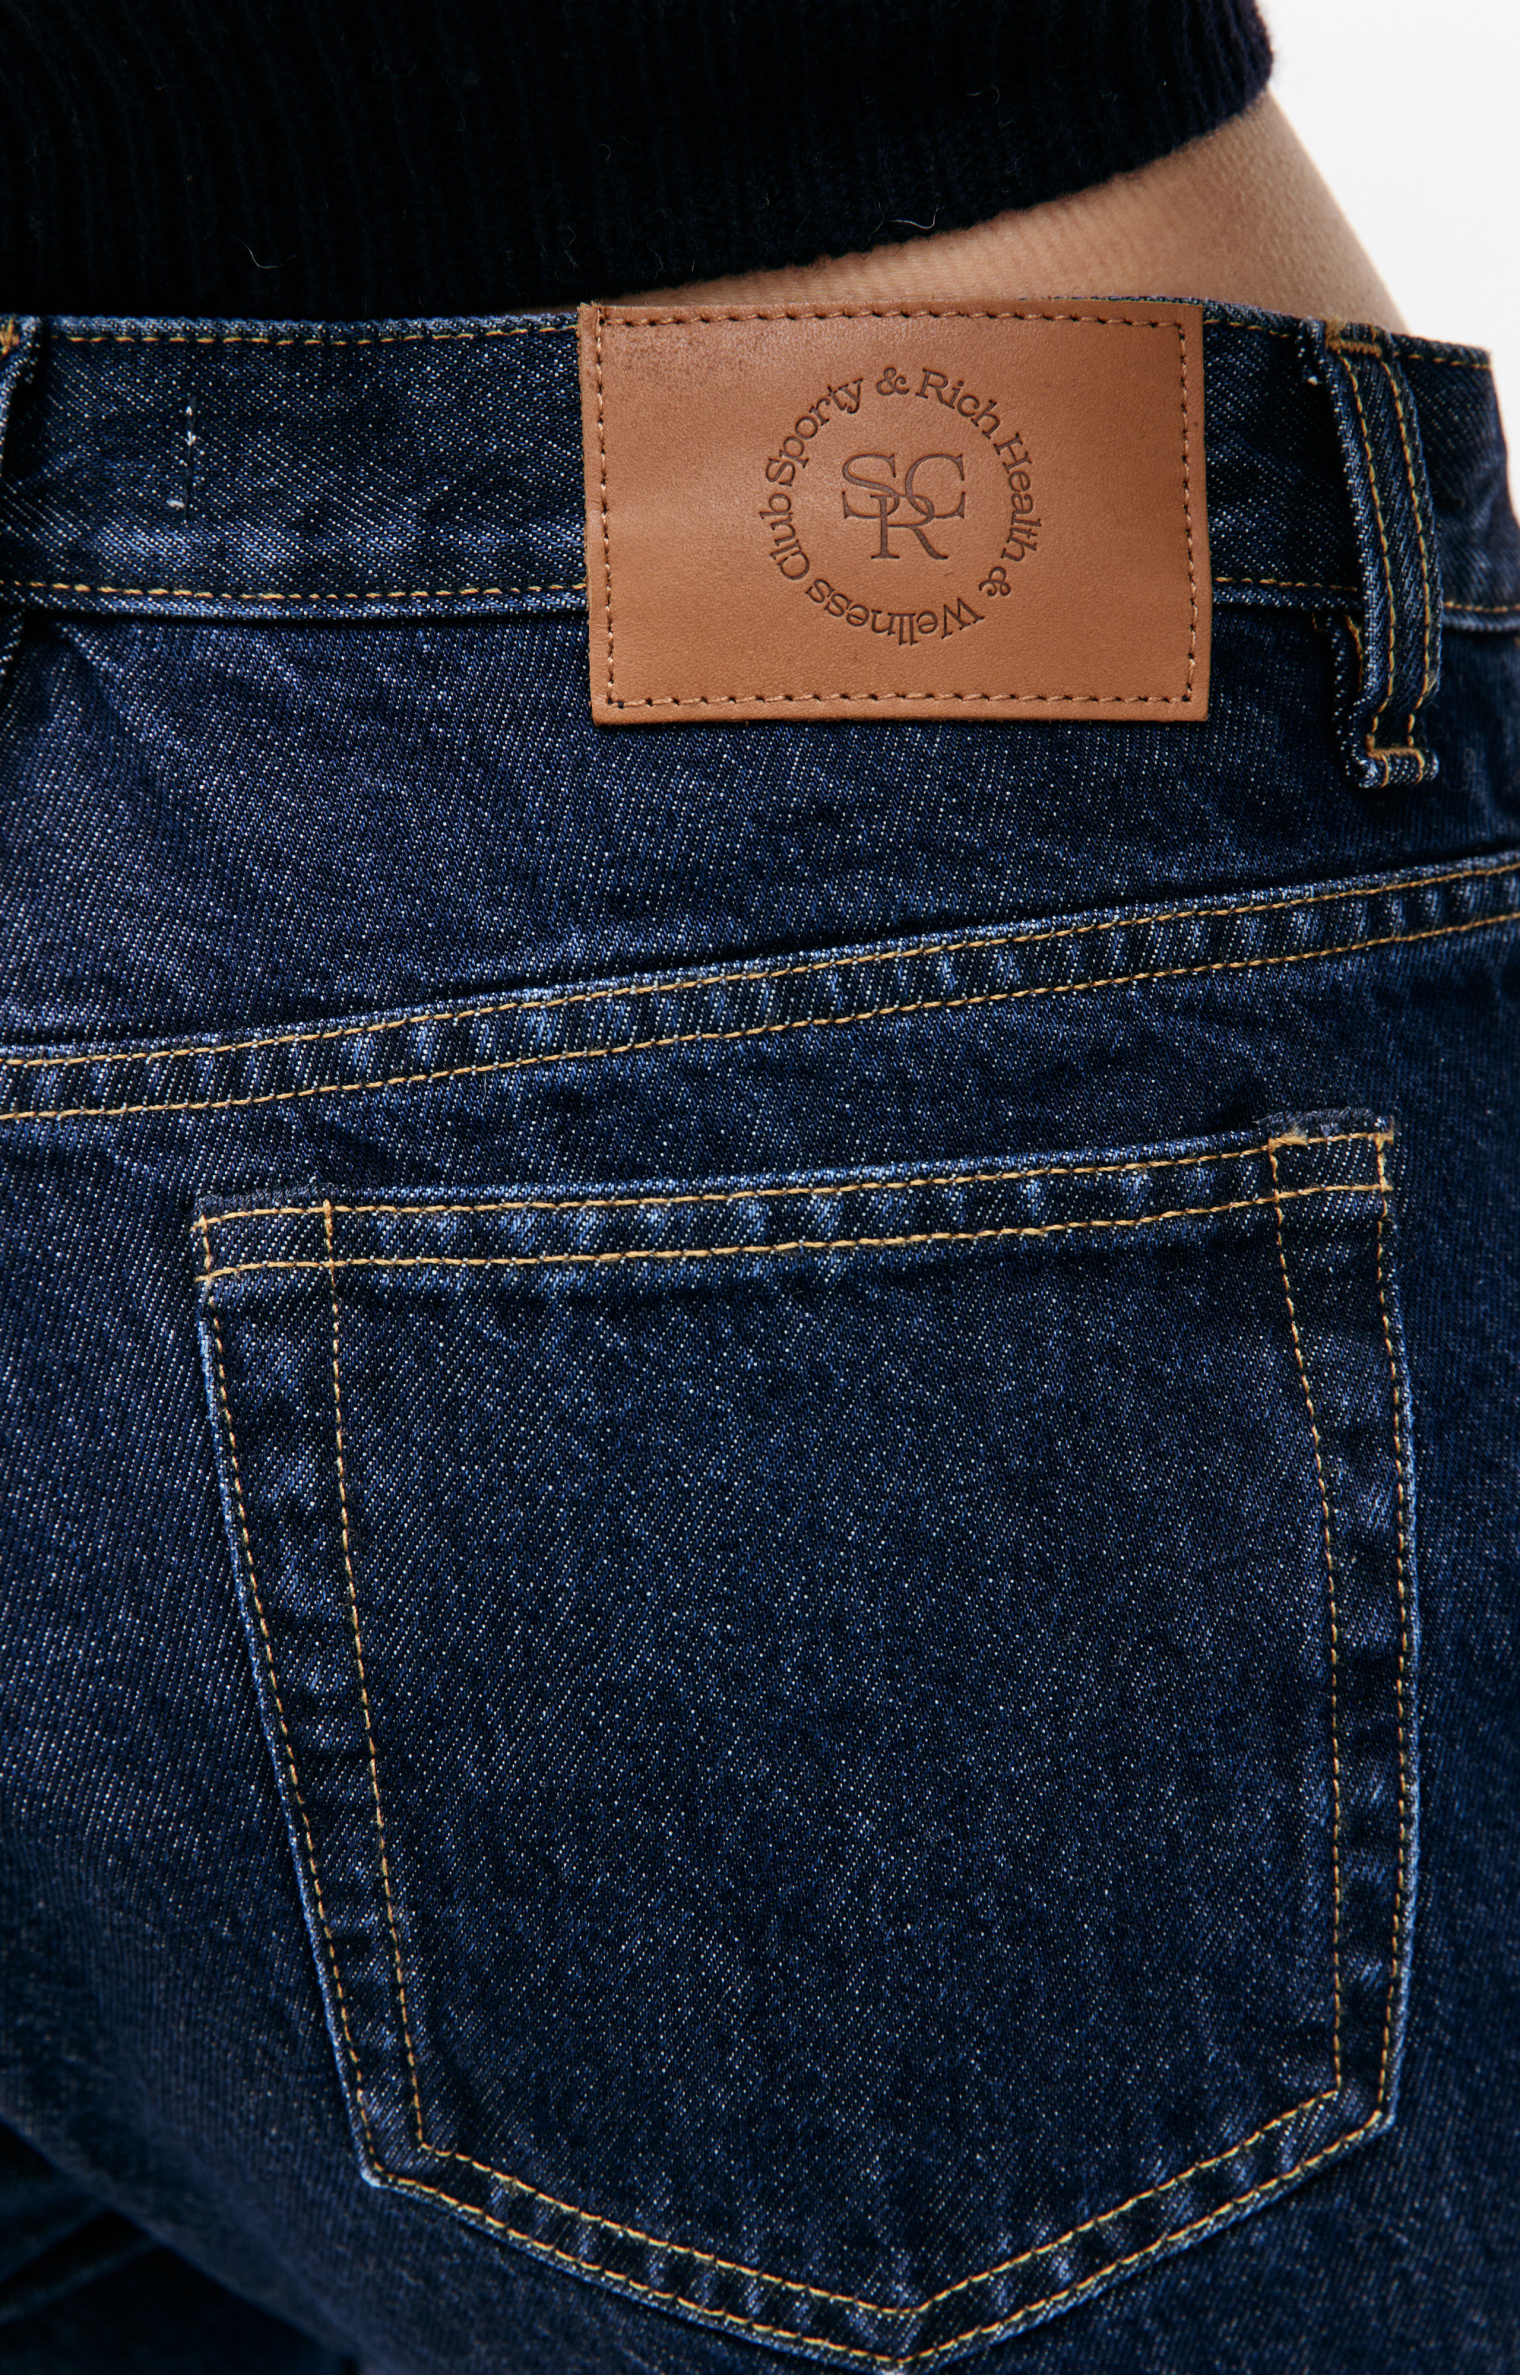 SPORTY & RICH Прямые джинсы с контрастной строчкой